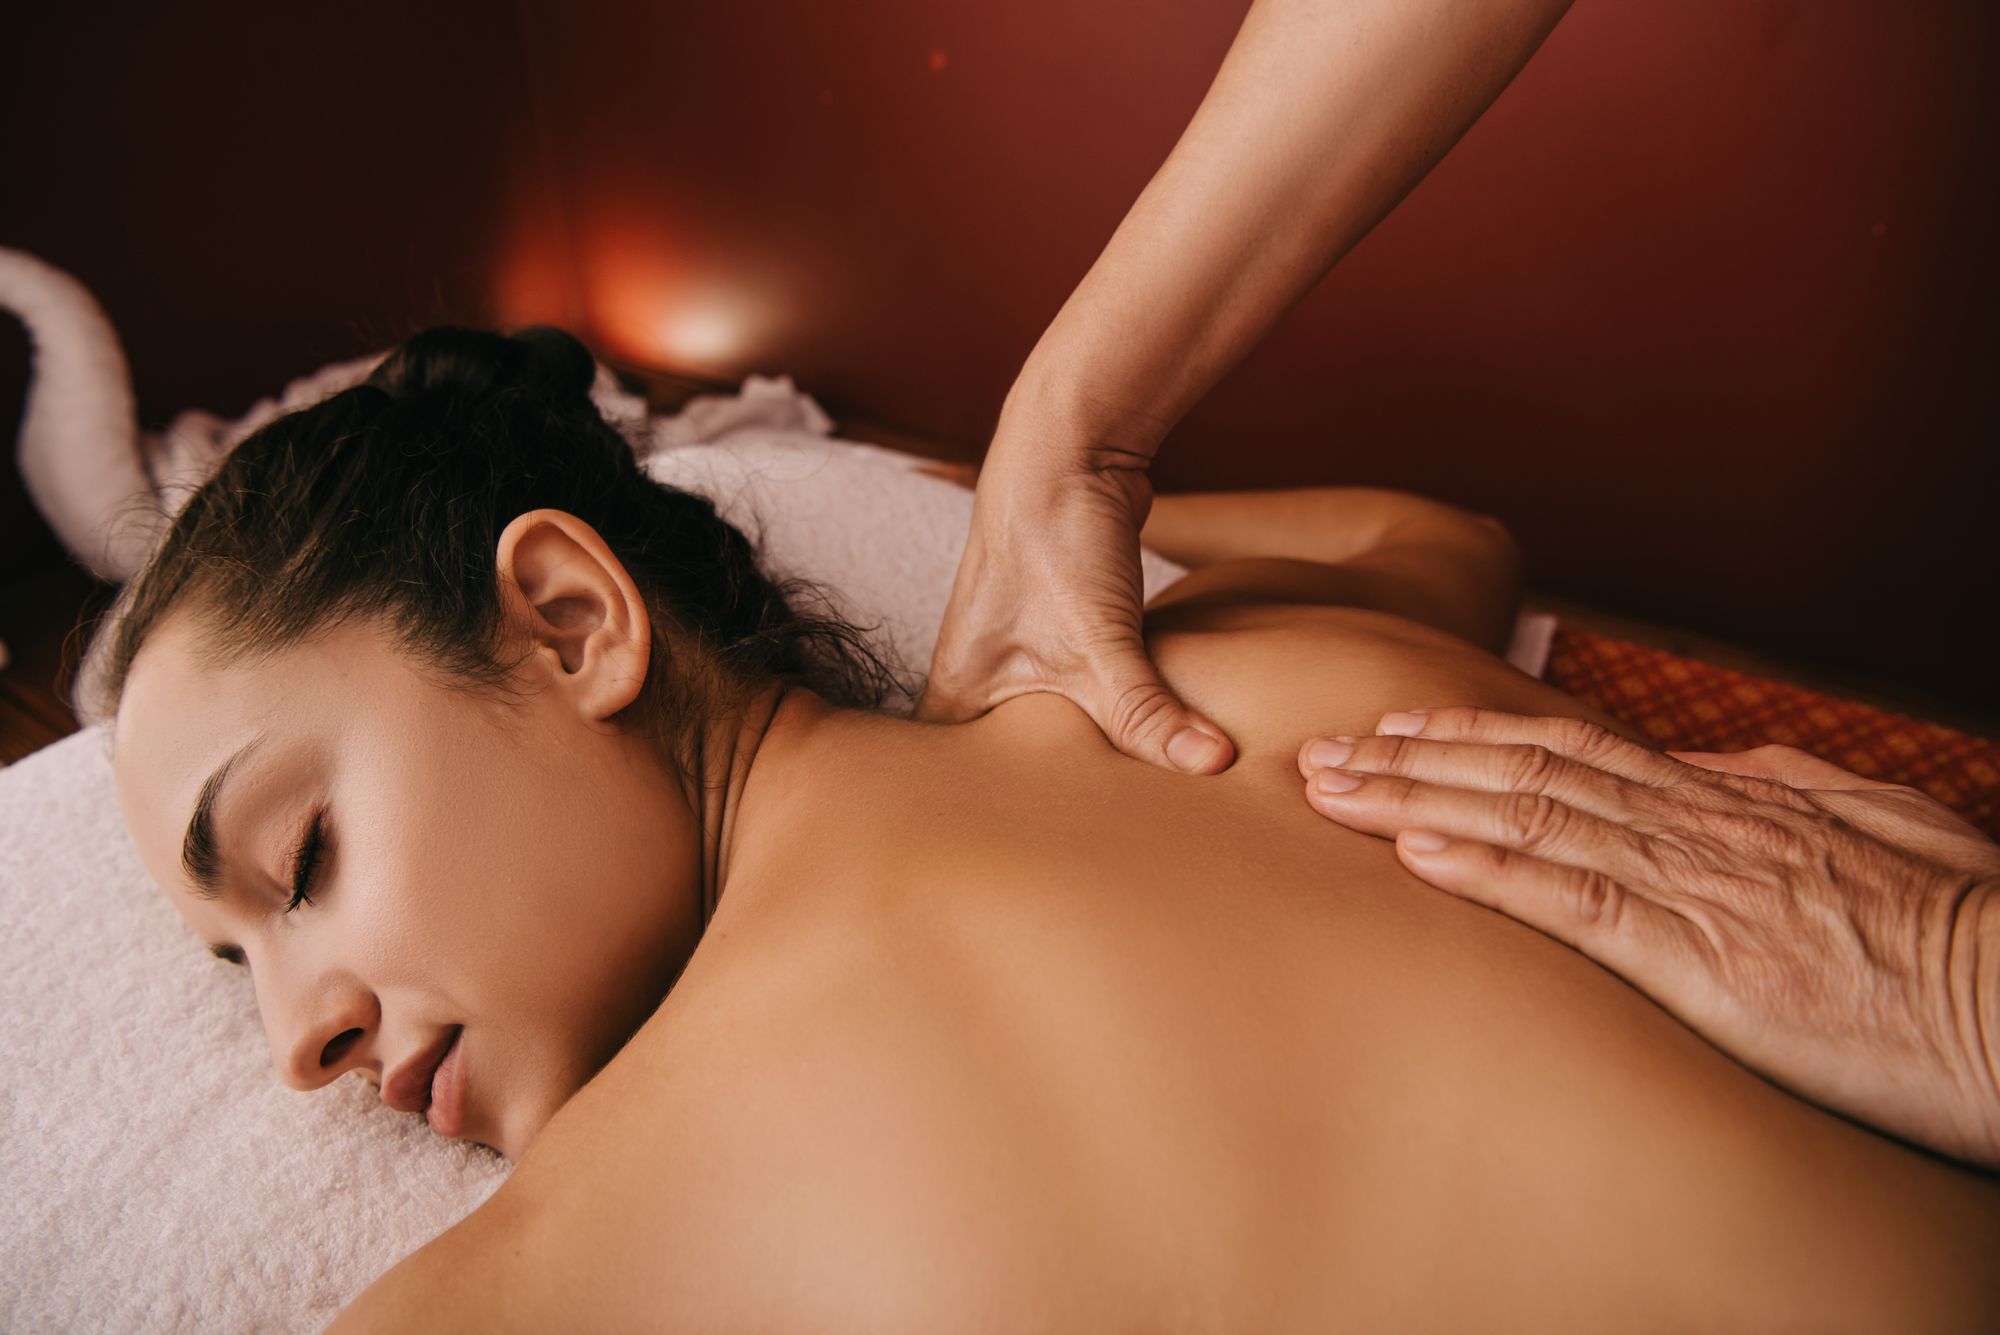 Massagem e acupuntura podem ser tratamentos eficazes: critérios de diagnósticos e tratamentos para fibromialgia